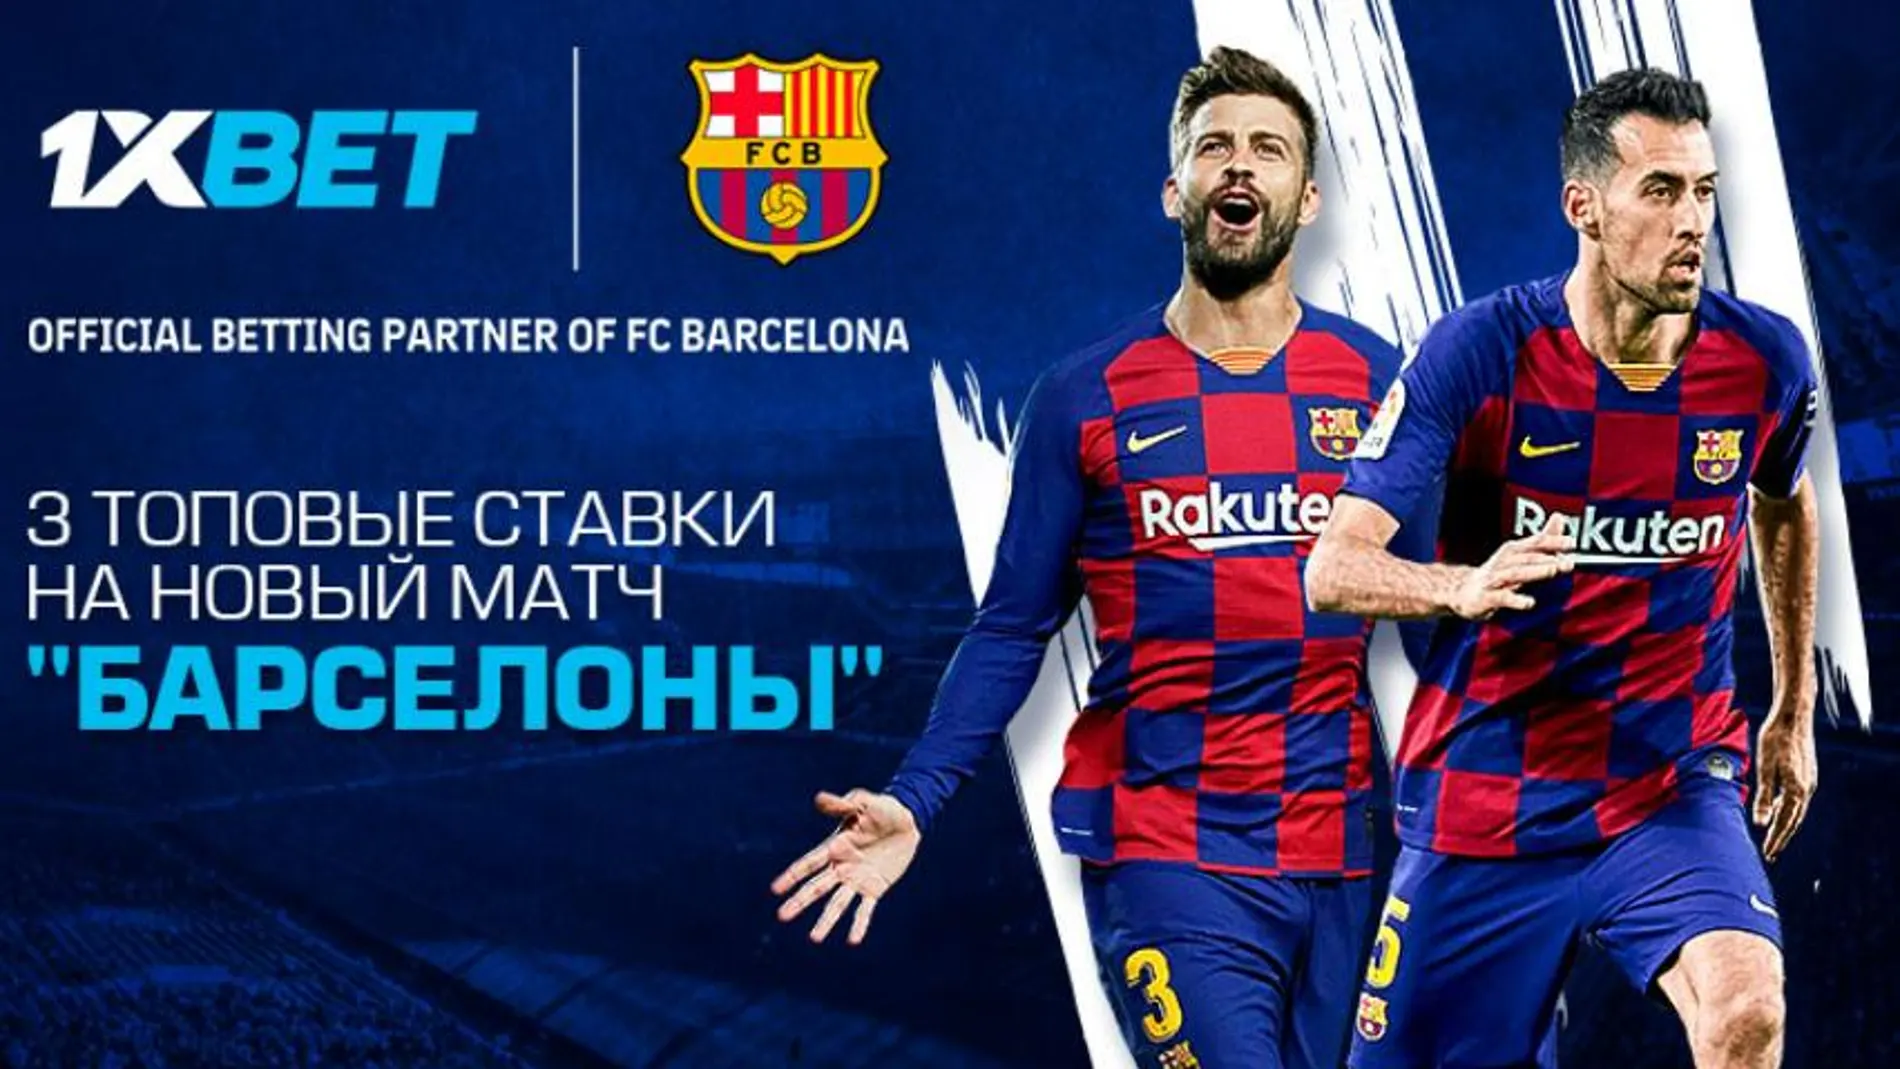 El polémico patrocinador ruso del Barça